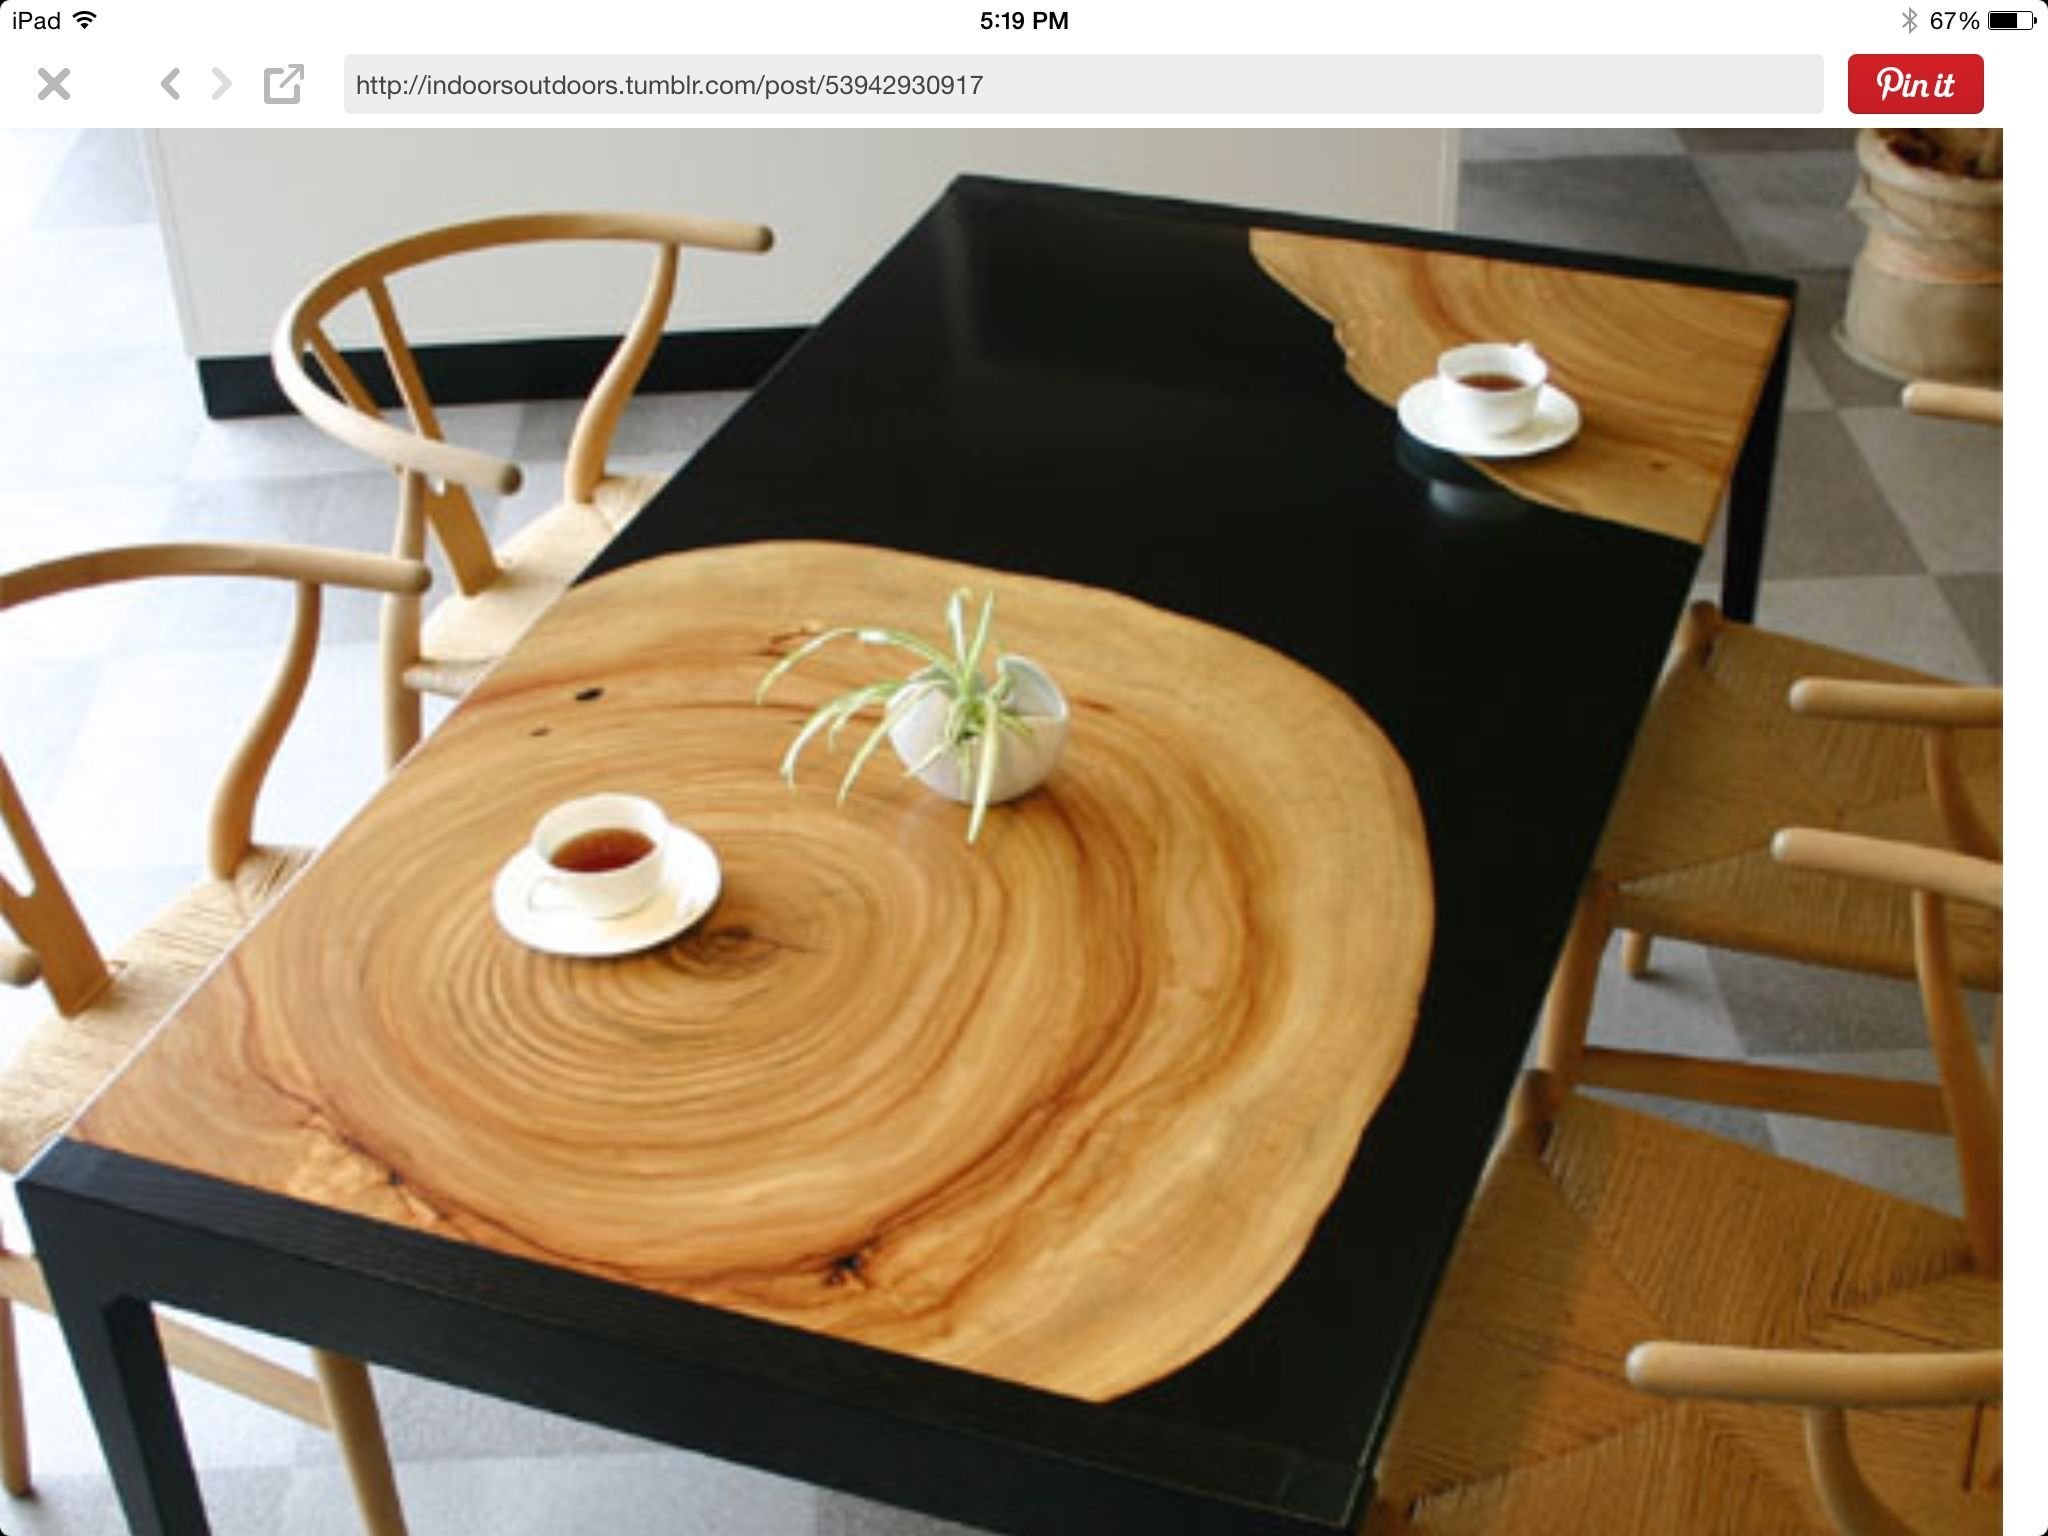 Необычные кухонные столы